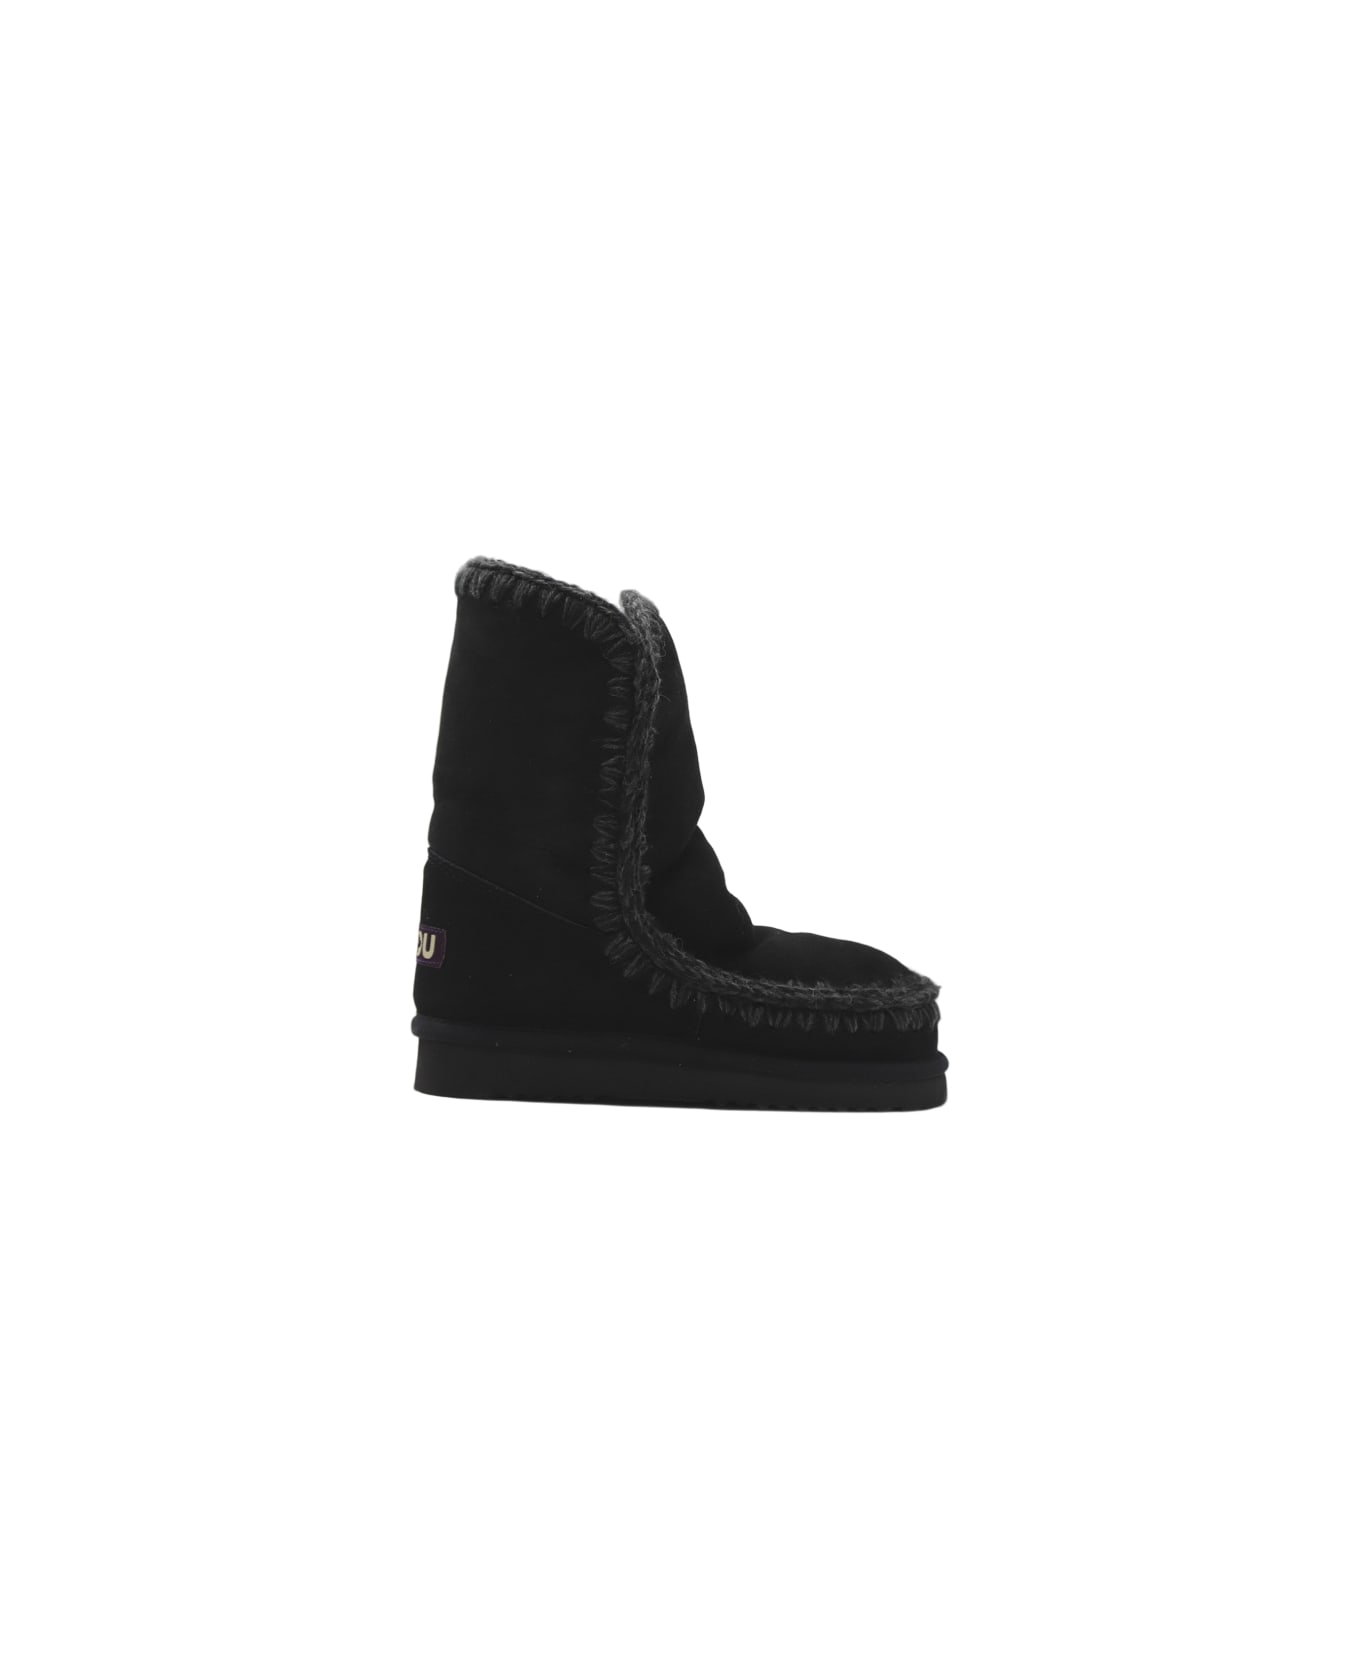 Mou 24 Eskimo Sheepskin Boots - Black ブーツ